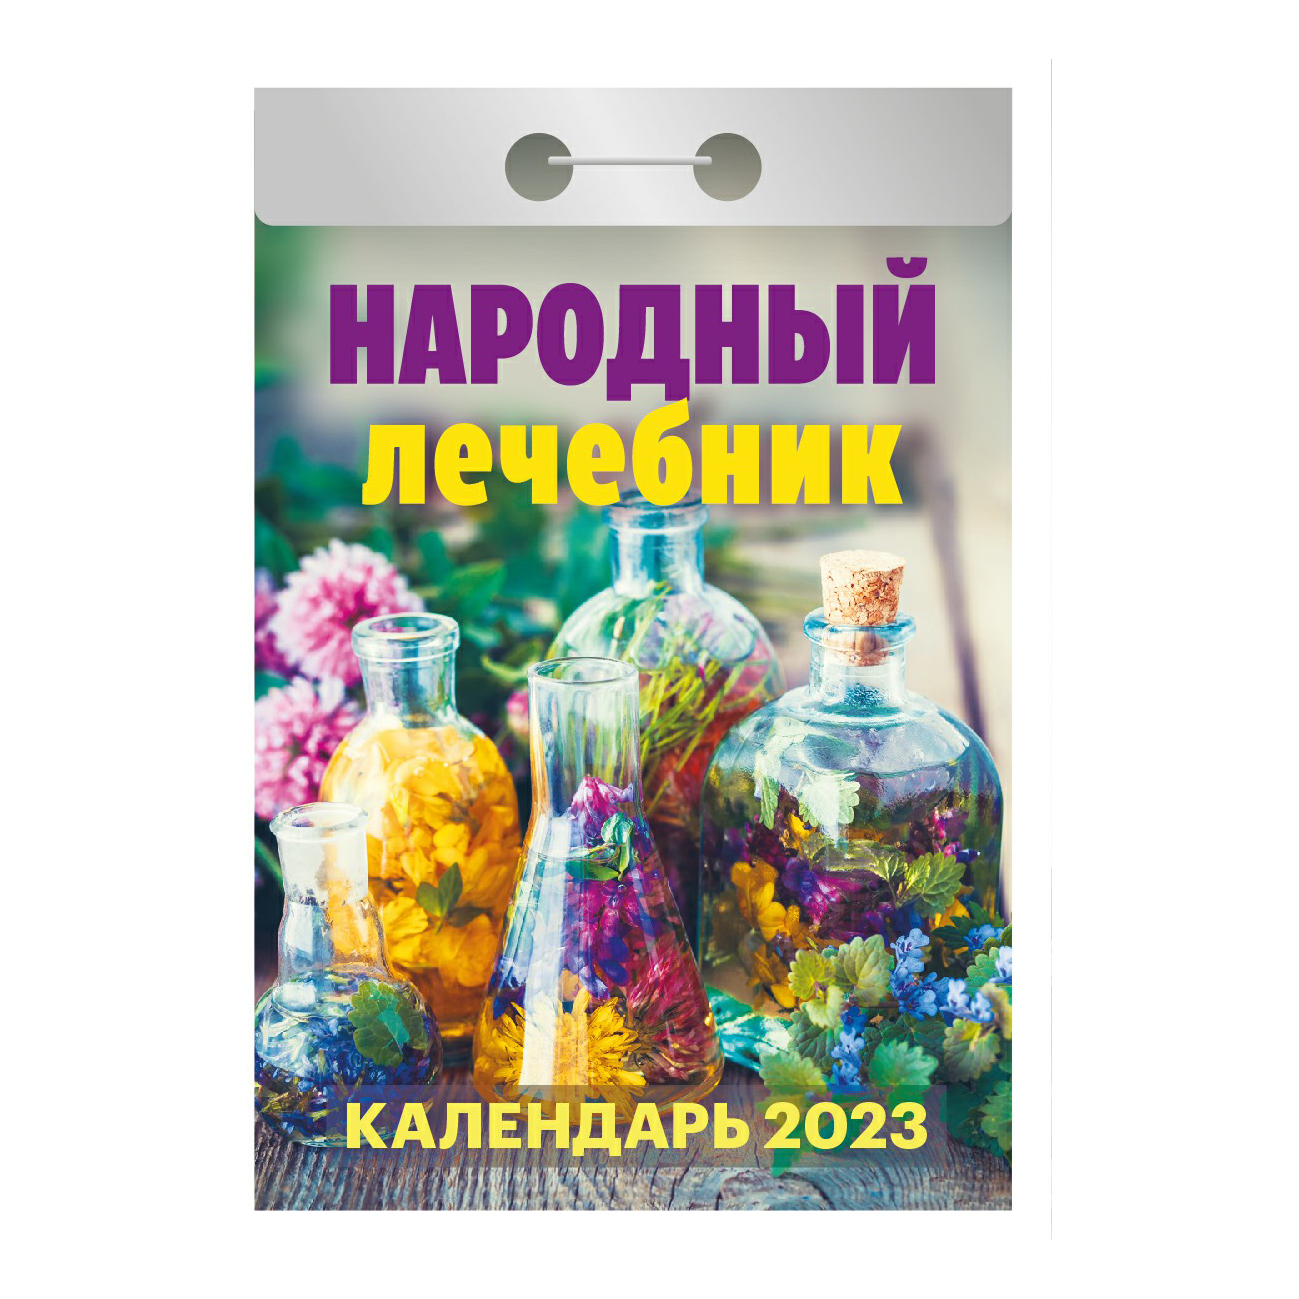 Календарь настенный отрывной Народный лечебник на 2023 год в ассортименте